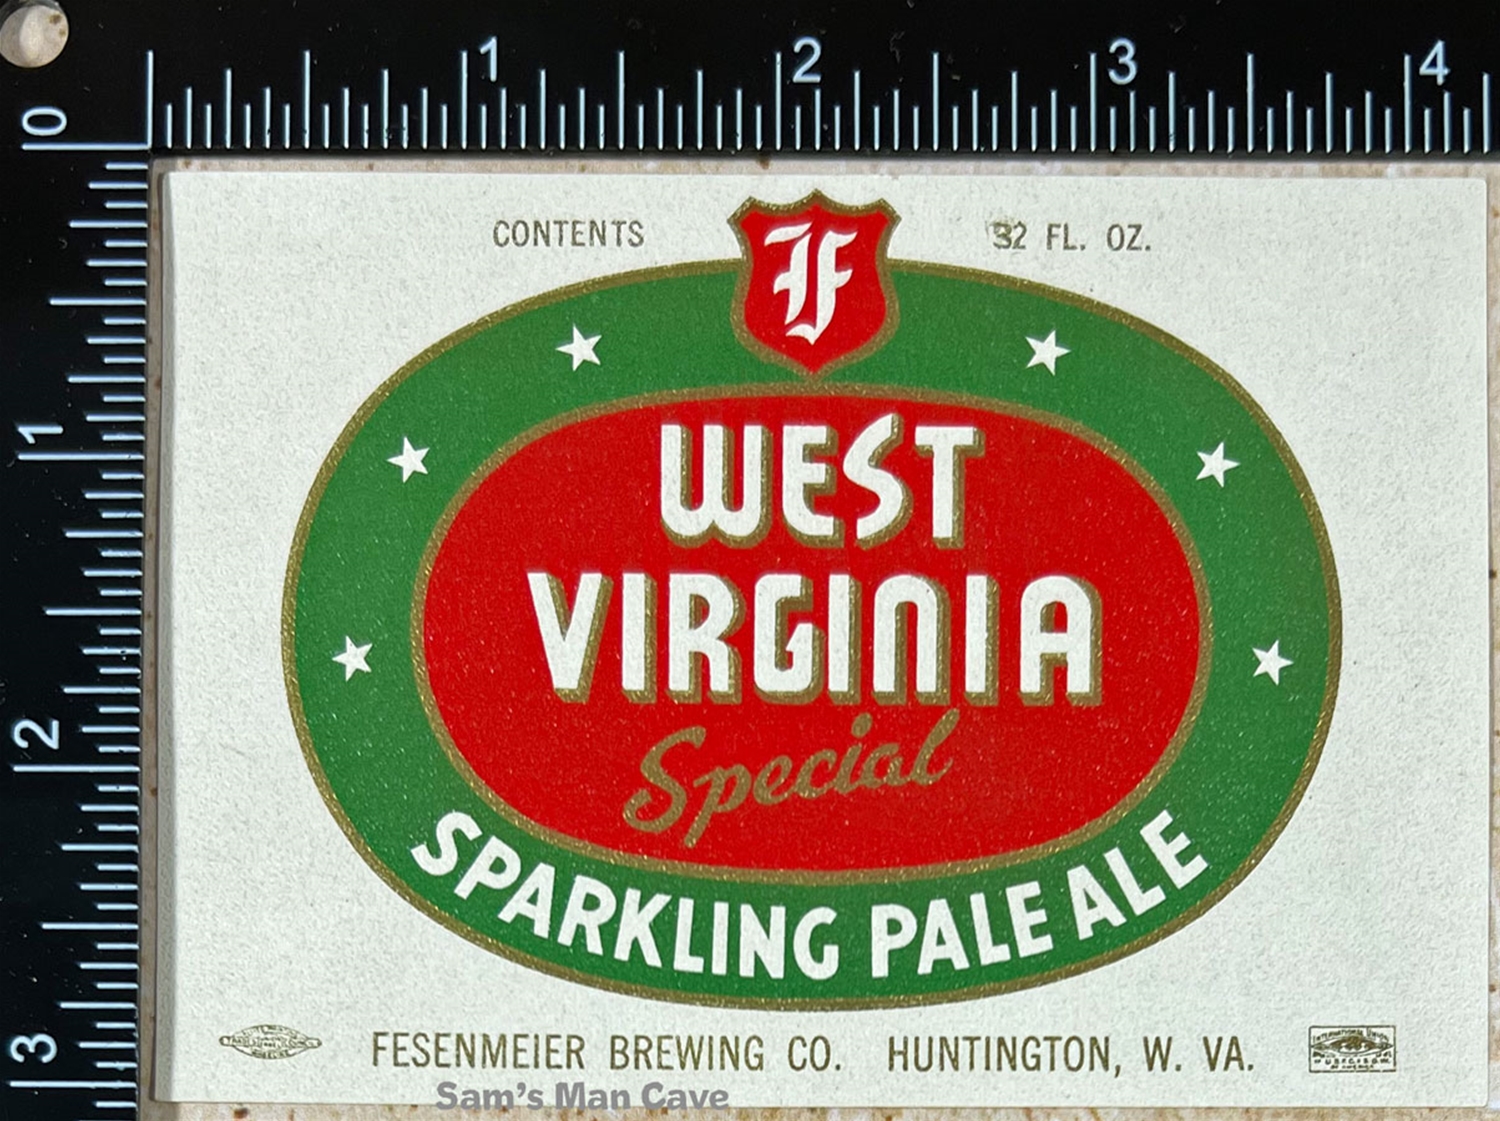 West Virginia Special Sparkling Ale Label